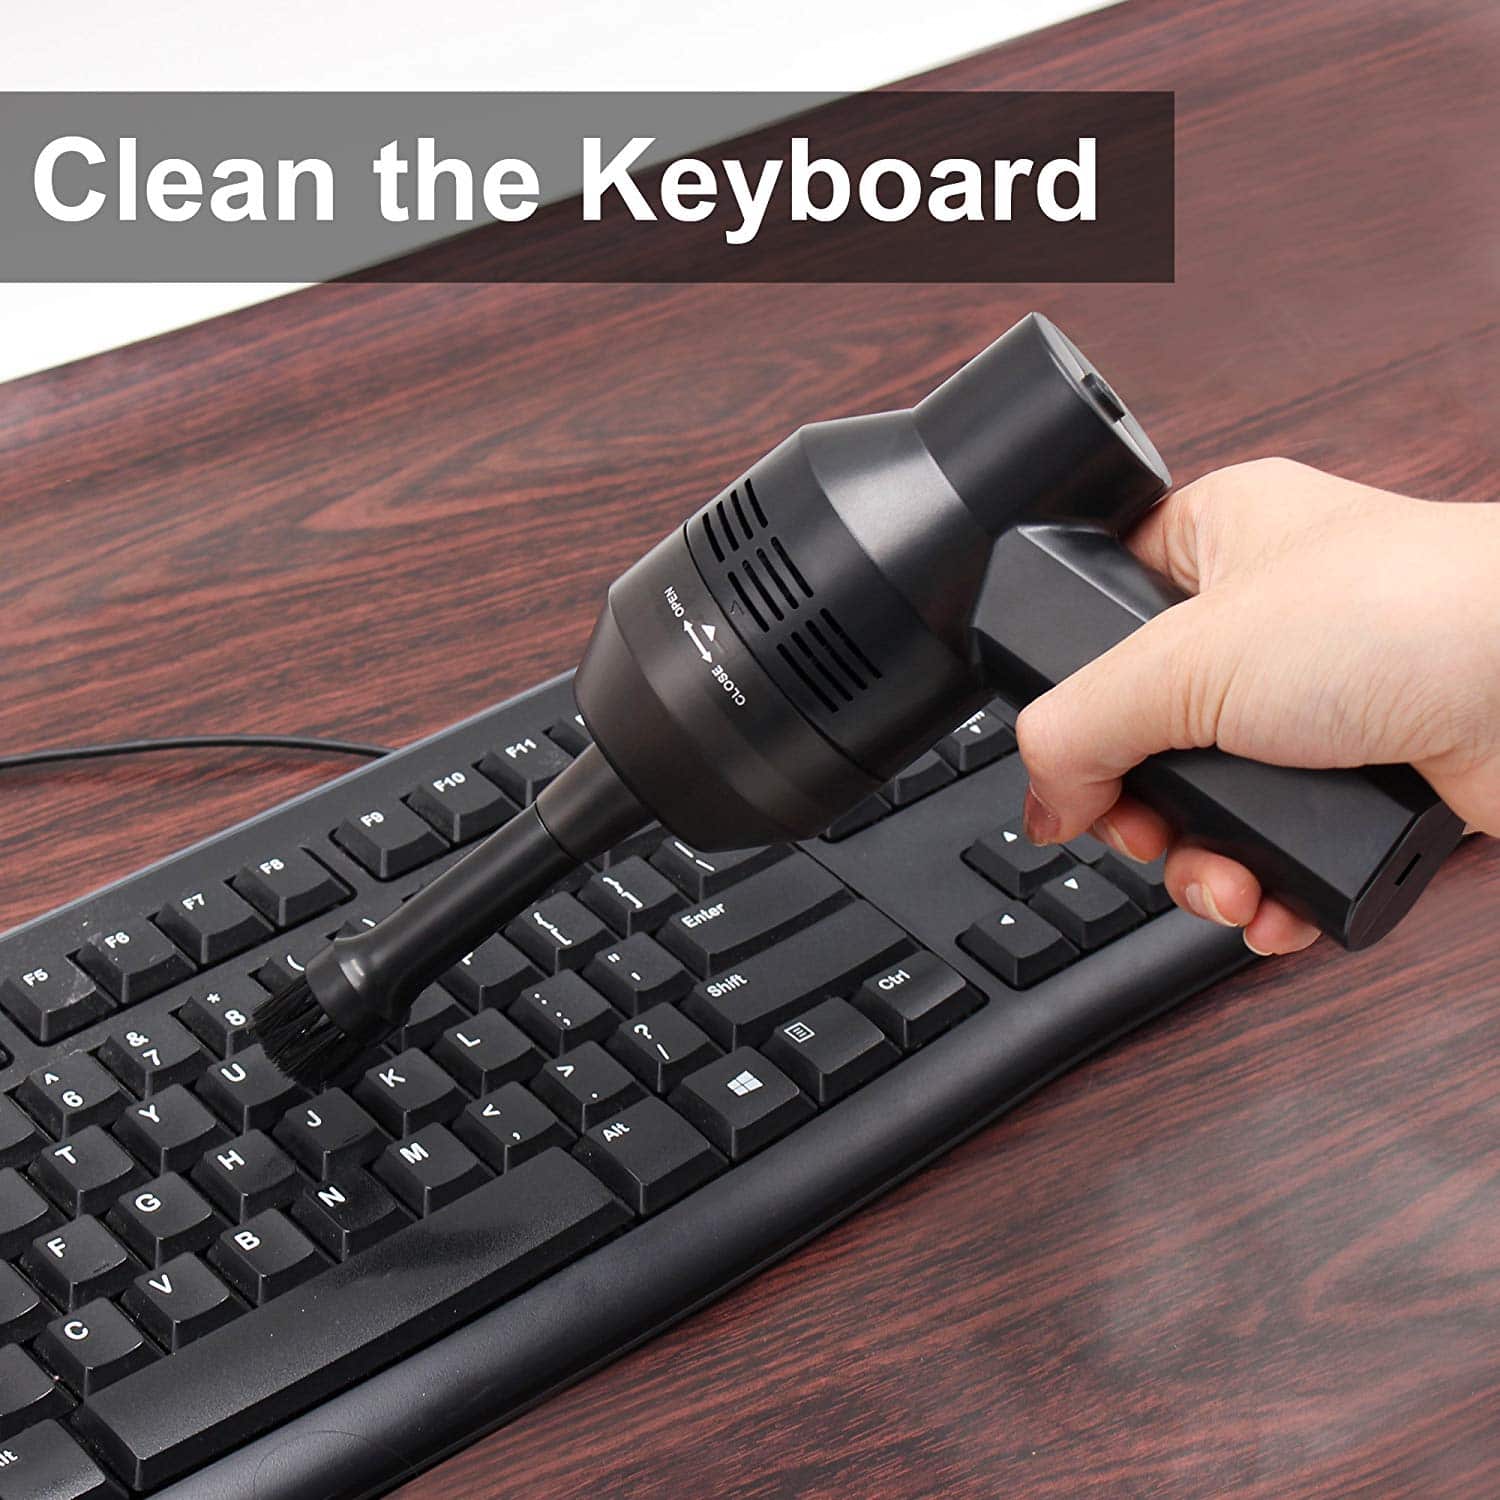 keyboard cleaner app